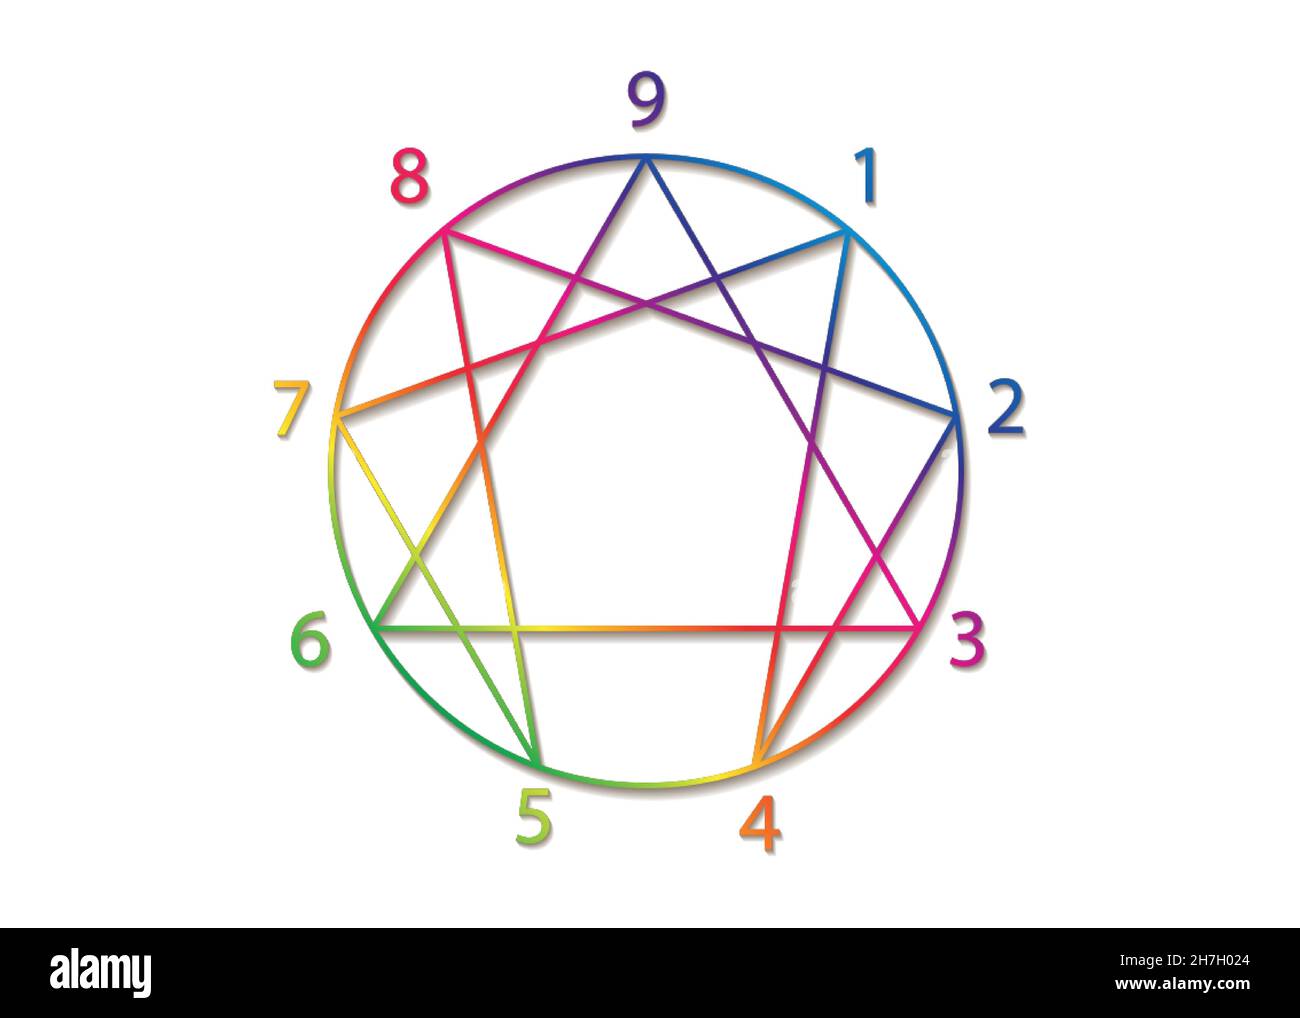 Enneagram Symbol, heilige Geometrie, Diagramm Bunte Gradienten Logo-Vorlage, mit Zahlen von einem bis neun über die neun Arten von Persönlichkeit, Zeichen Stock Vektor